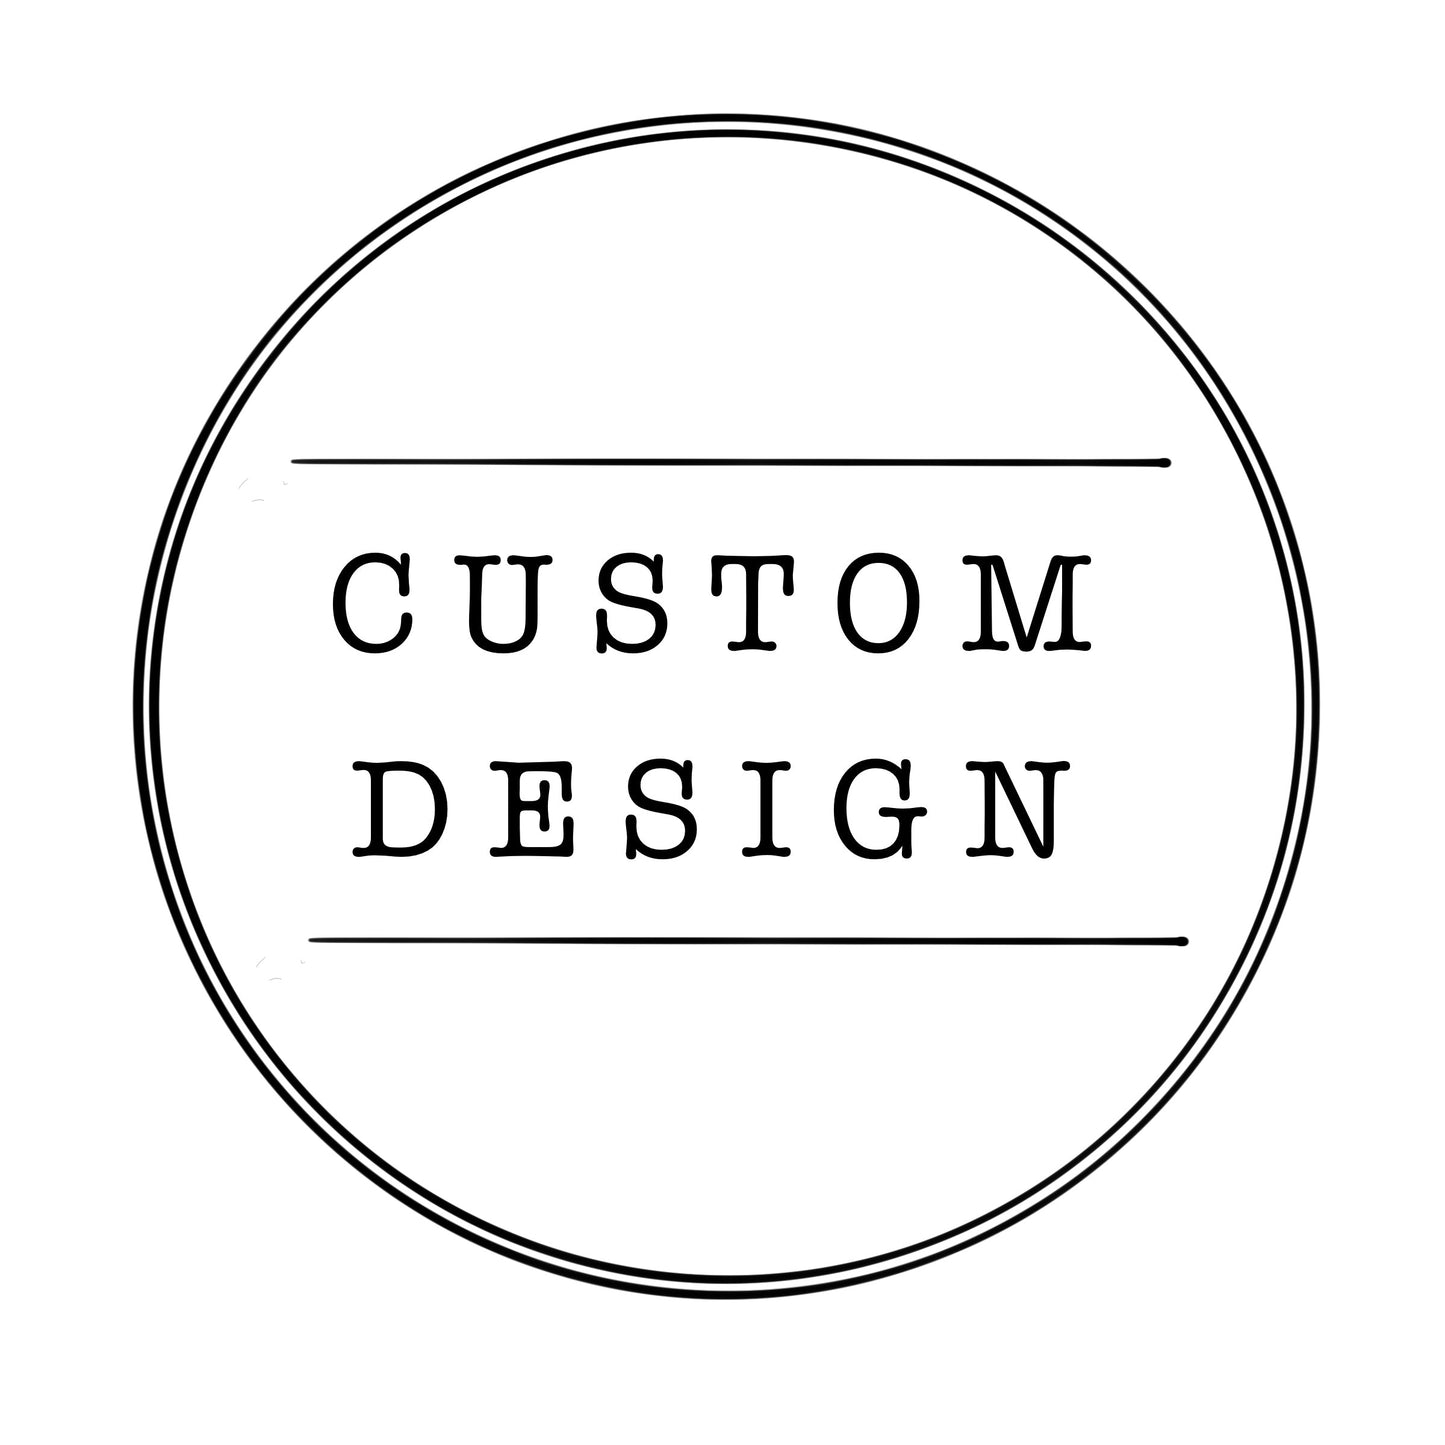 Custom design for Abbey